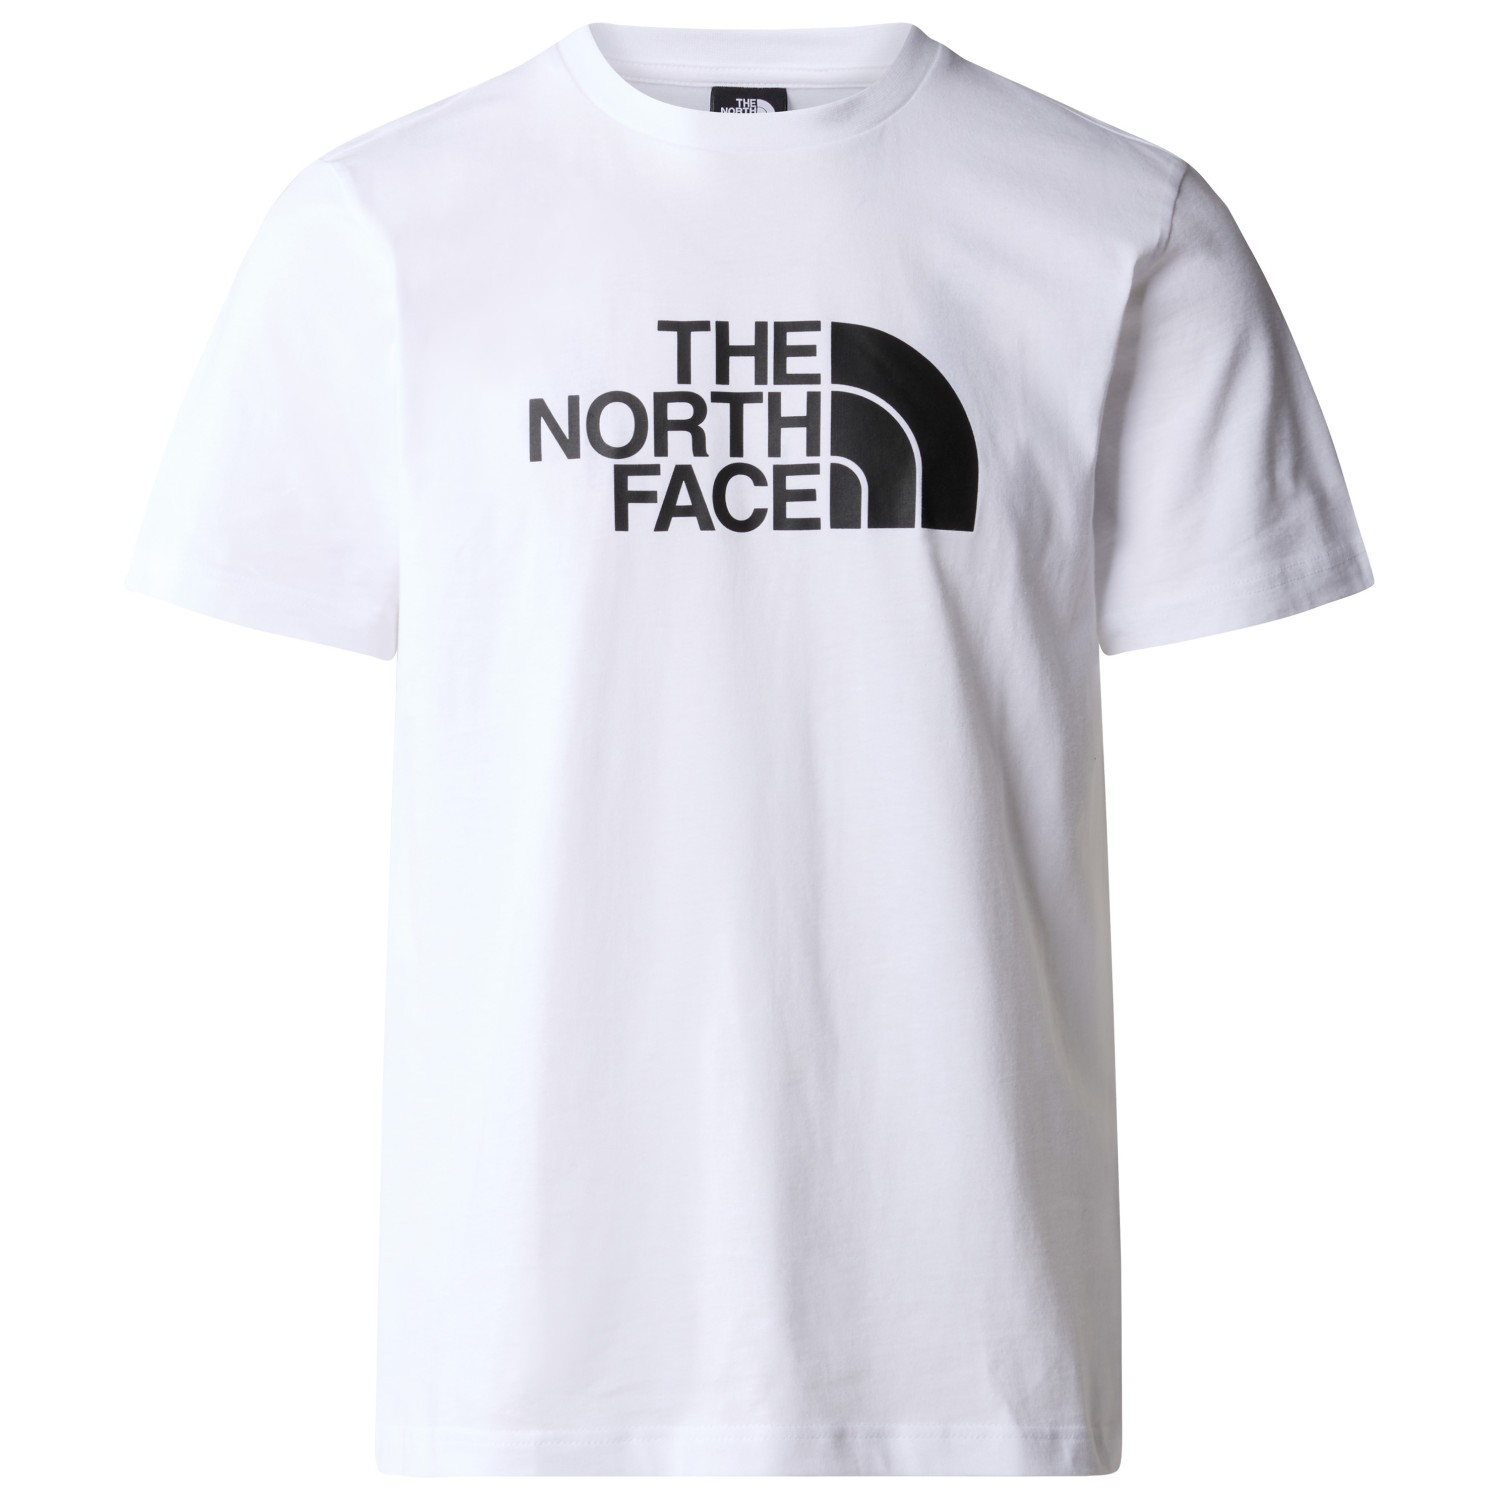 функциональная рубашка the north face women s flex circuit s s tee цвет tnf black Футболка The North Face S/S Easy Tee, цвет TNF White